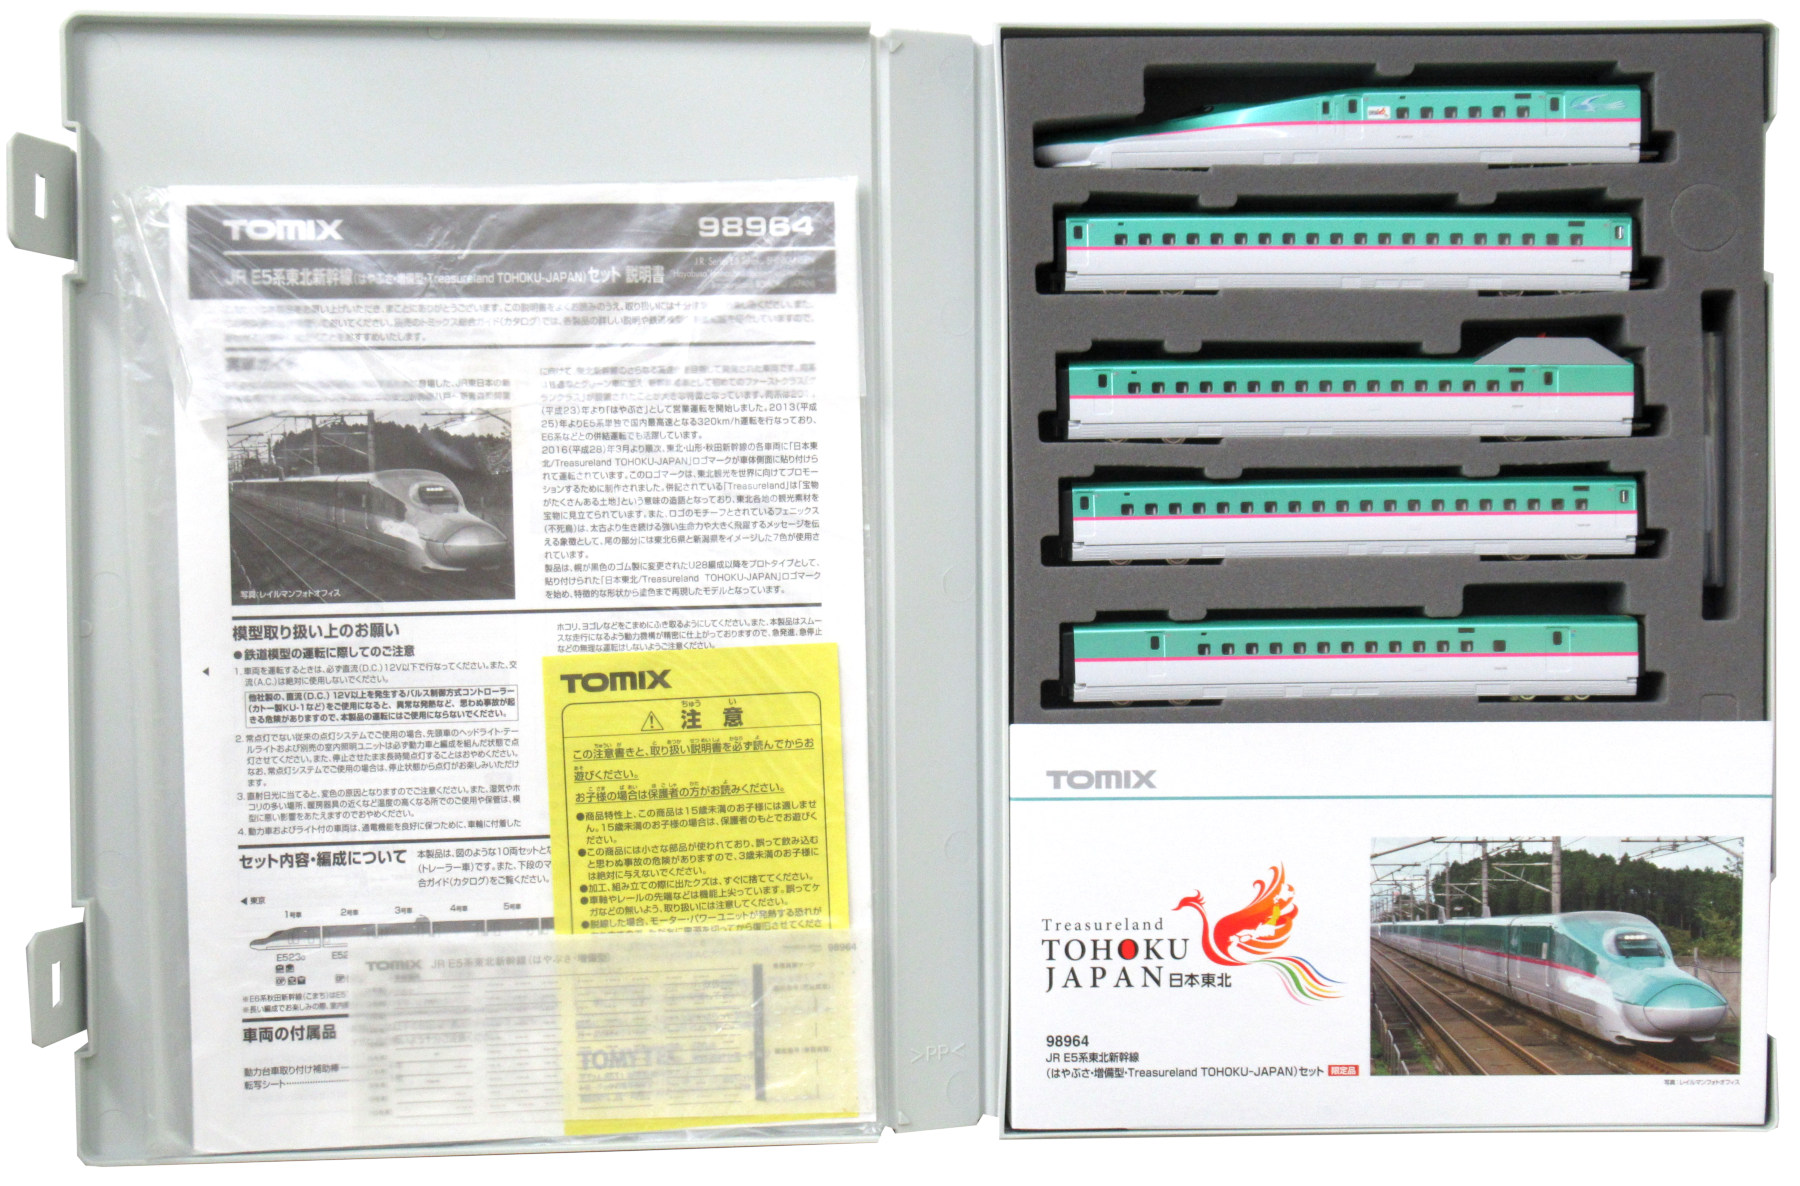 公式]鉄道模型(98964JR E5系東北新幹線 (はやぶさ増備型Treasureland